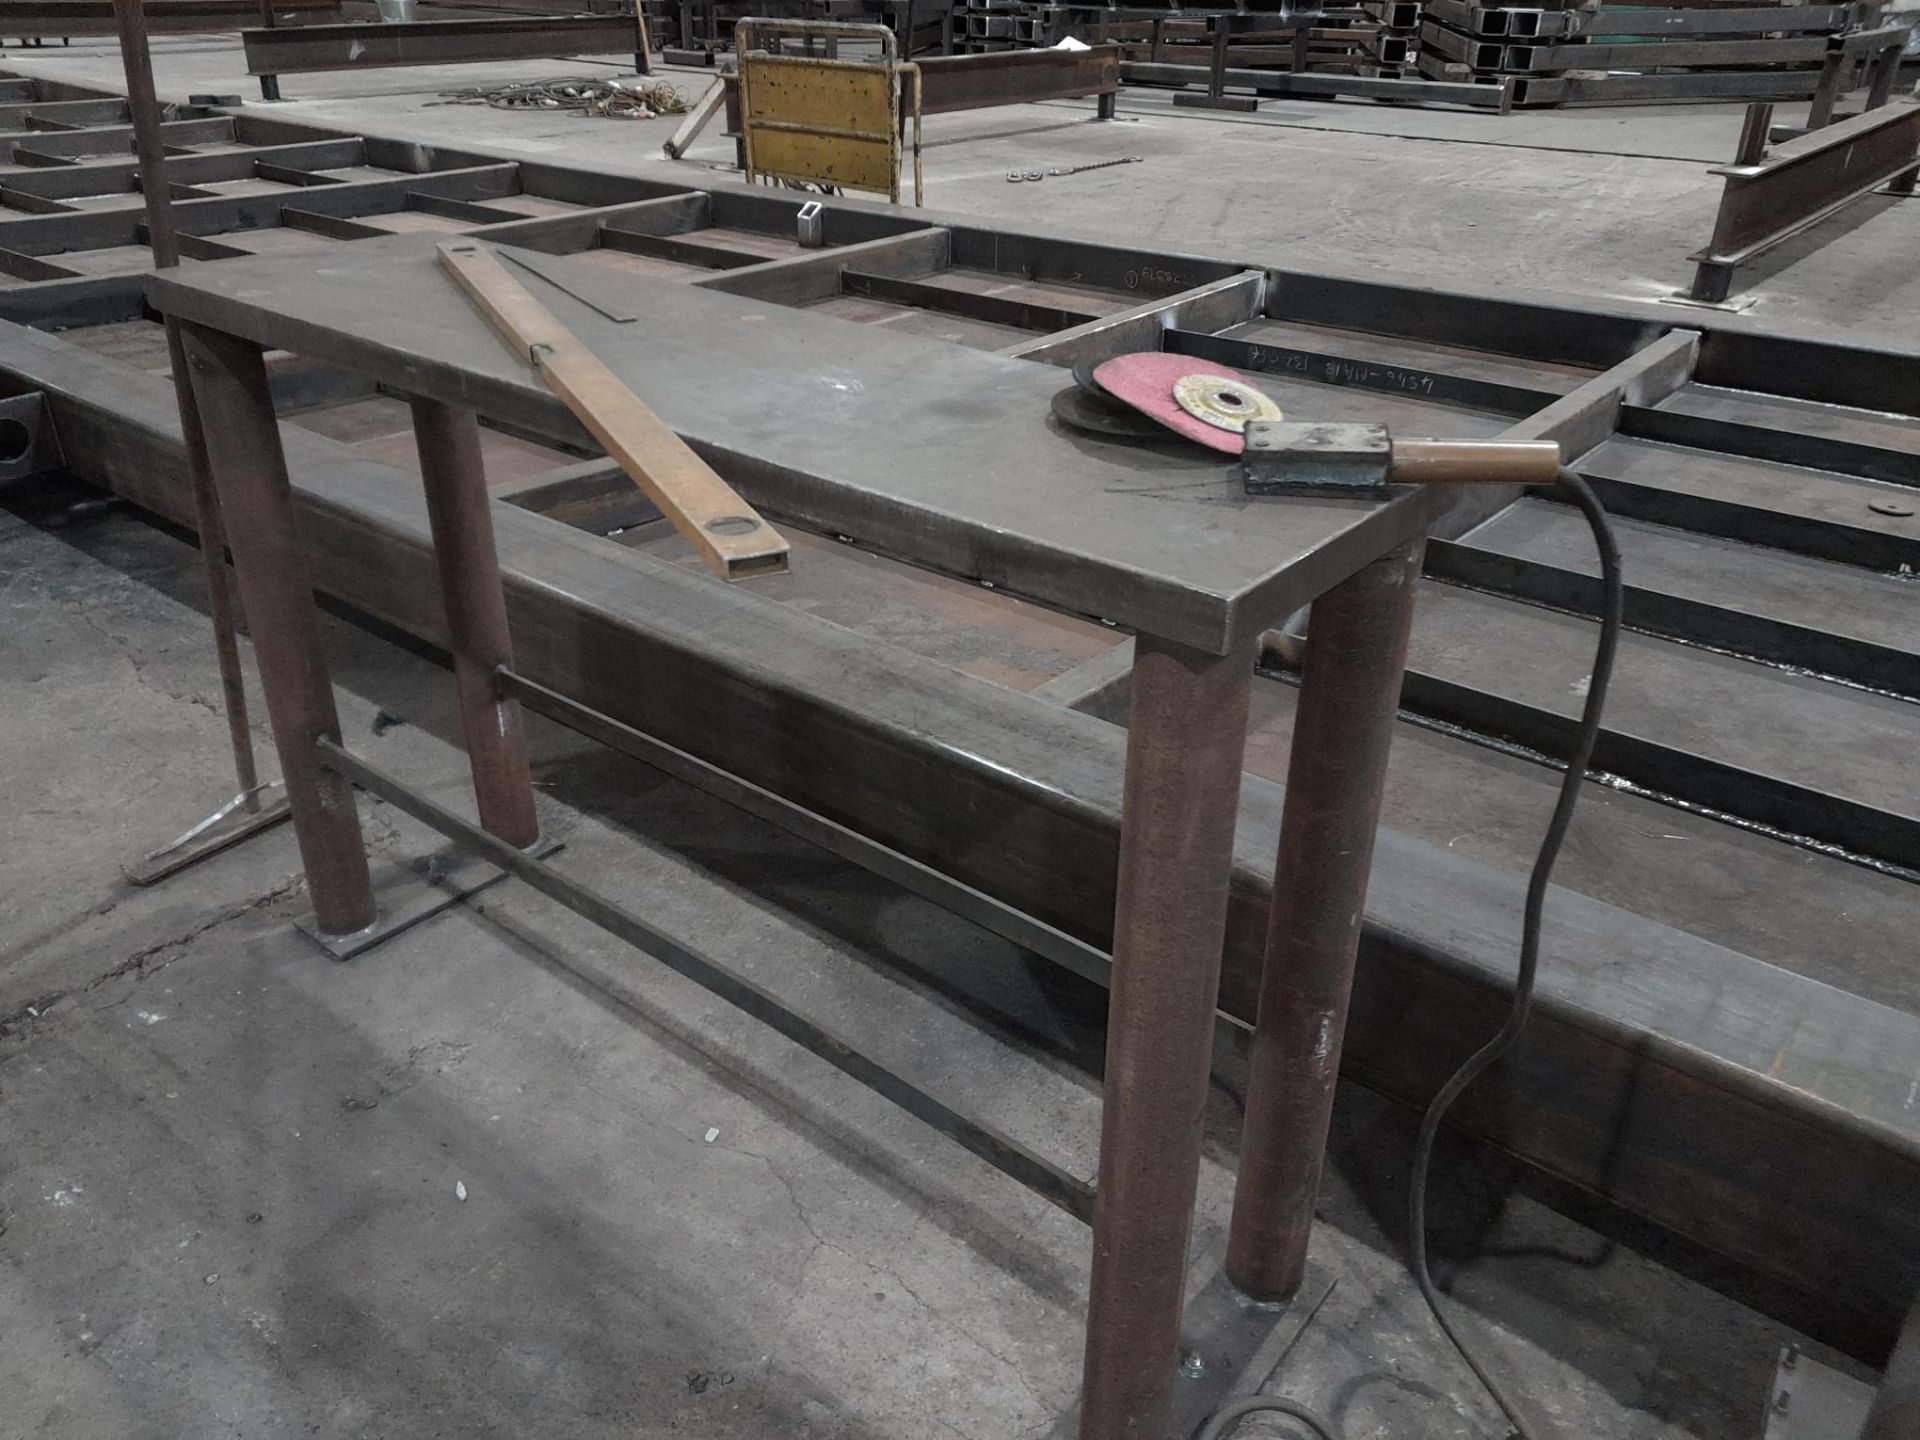 2 Steel work tables